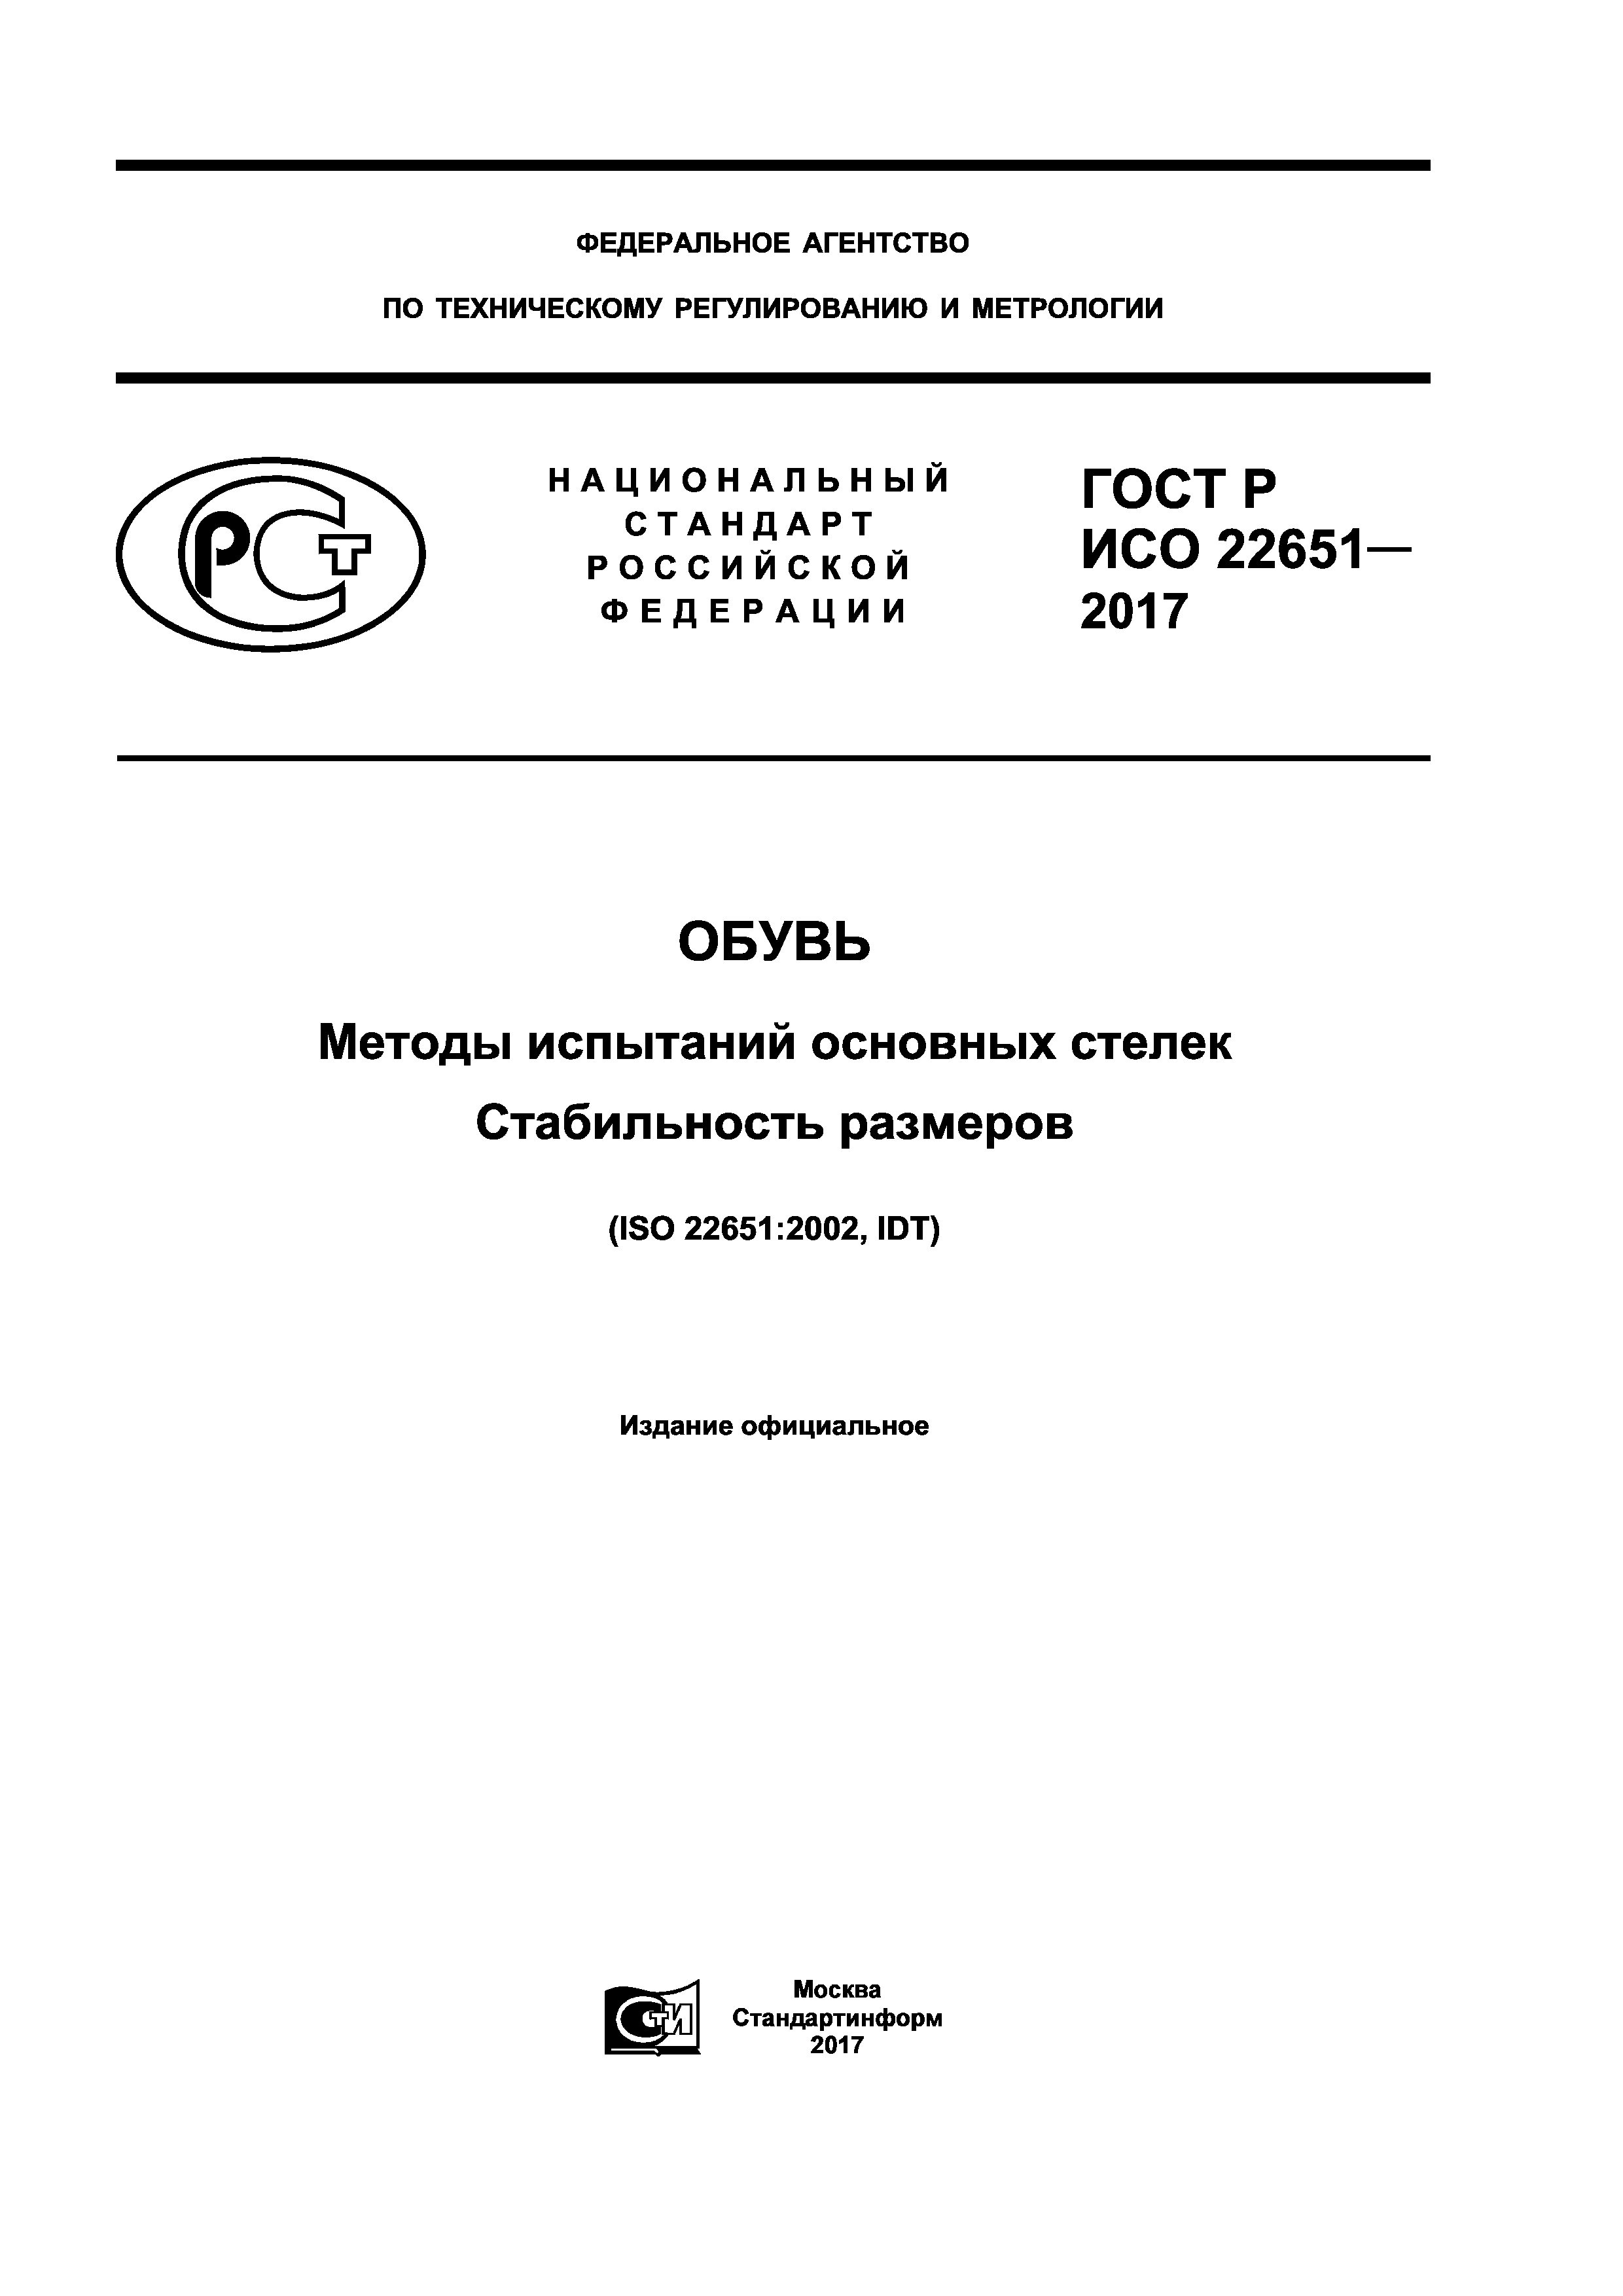 ГОСТ Р ИСО 22651-2017